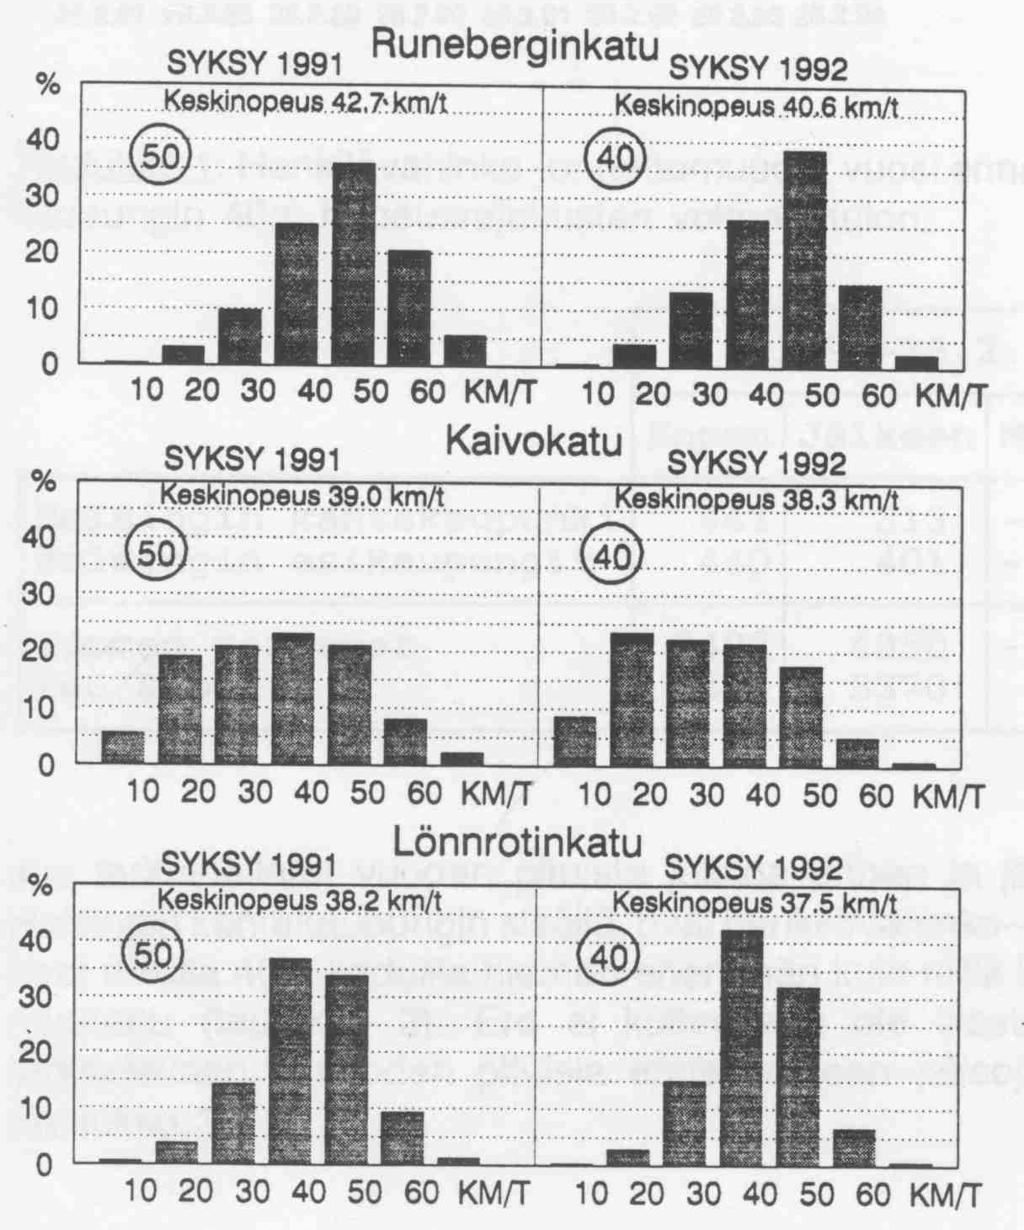 Loppuraportti, 1994) Märkus: Selgitused joonistel 2 ja 3: YLI * KM/T AJANEET = üle * km/h kiirusega sõitnud Aastaaeg: Syksy- sügis,